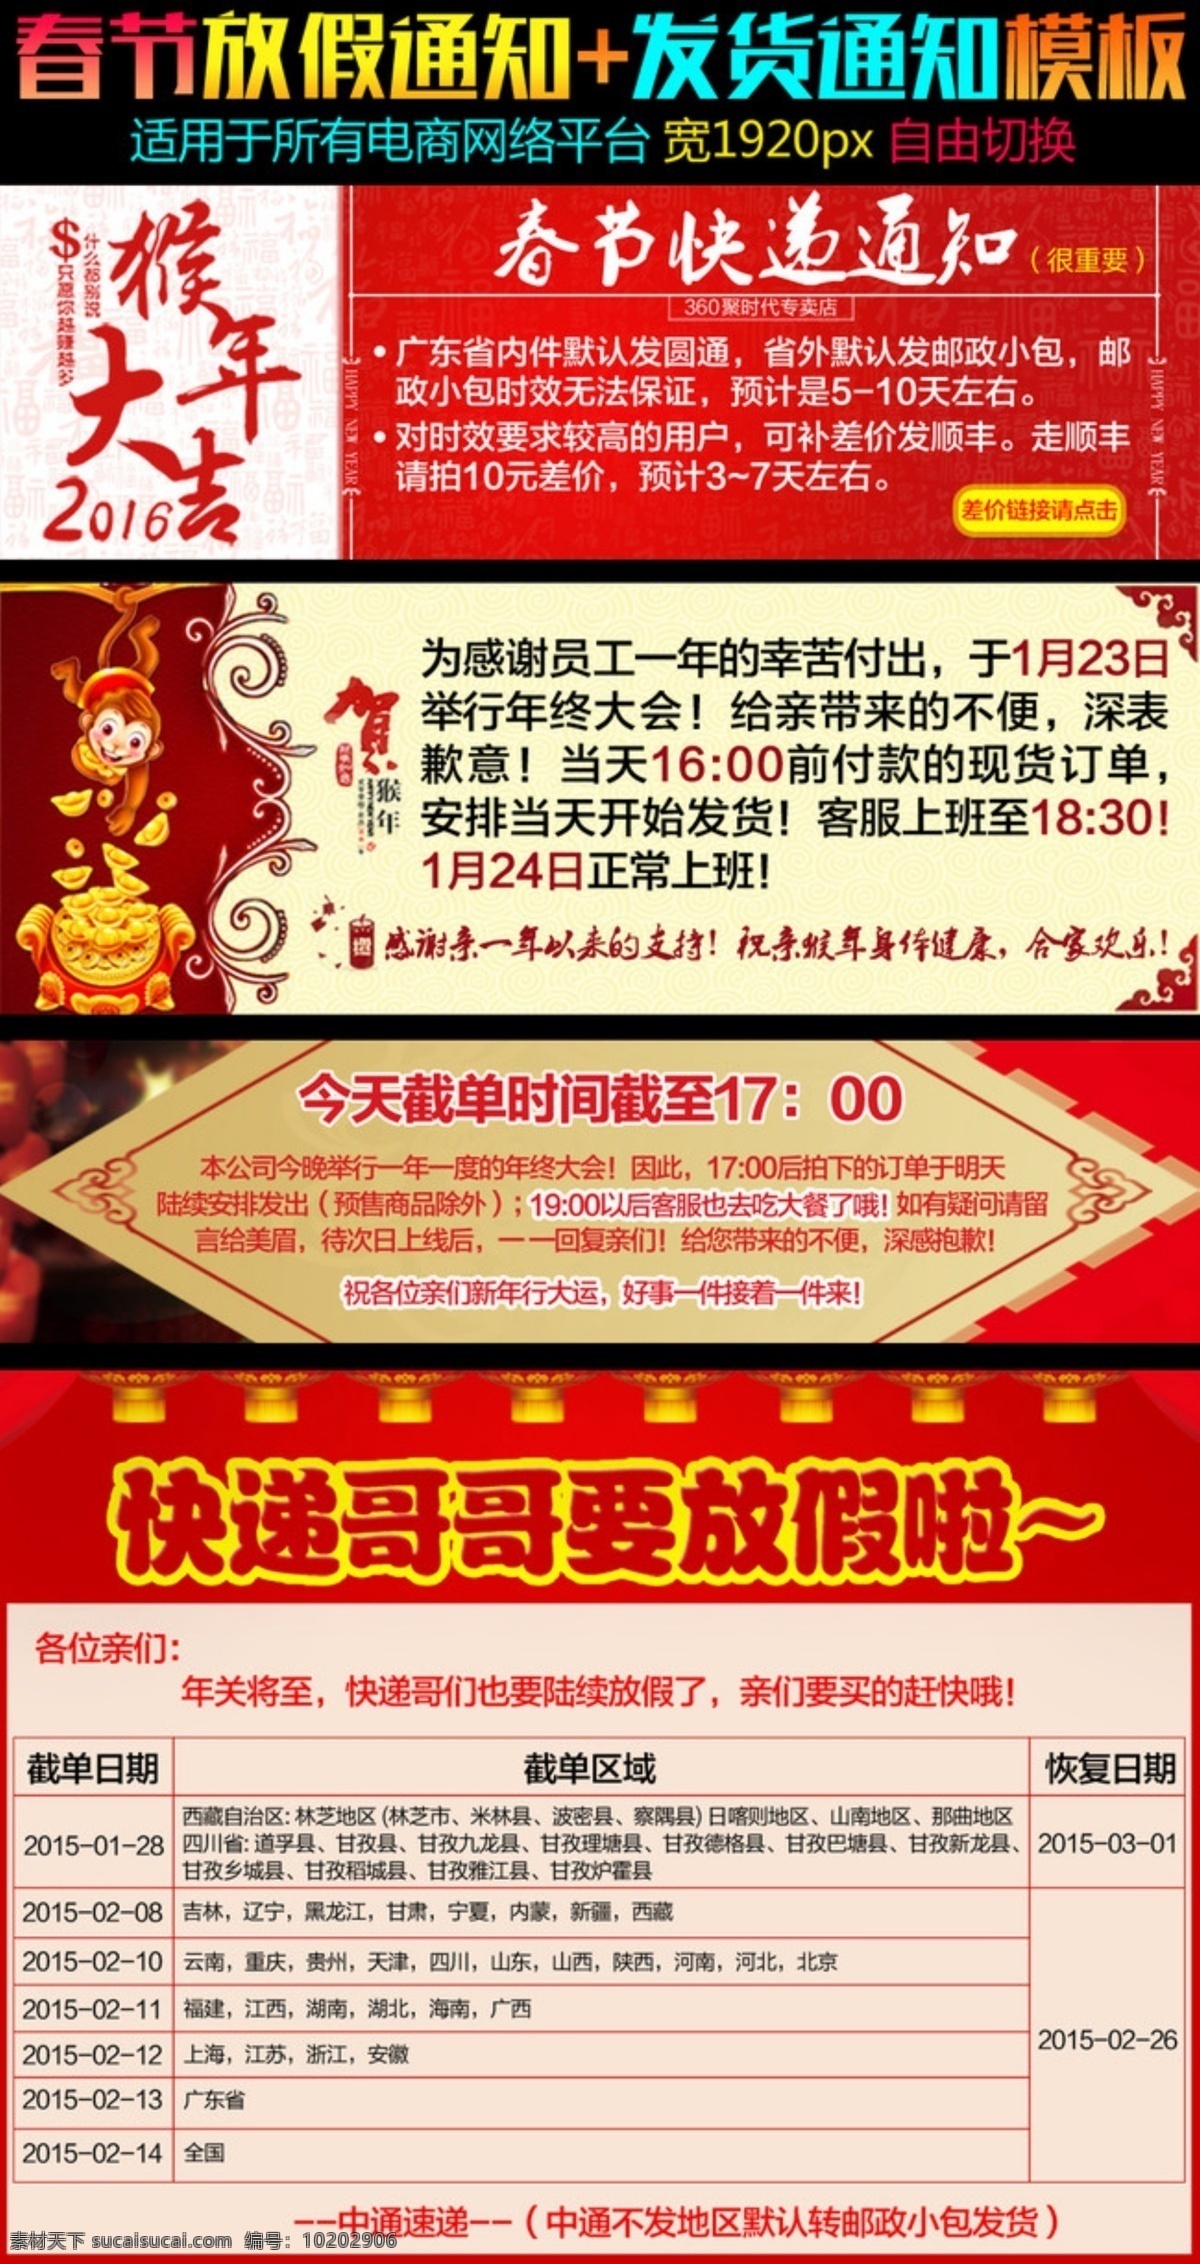 淘宝 天猫 春节 放假 通知 新年 发货 模板 淘宝素材 淘宝设计 淘宝模板下载 红色